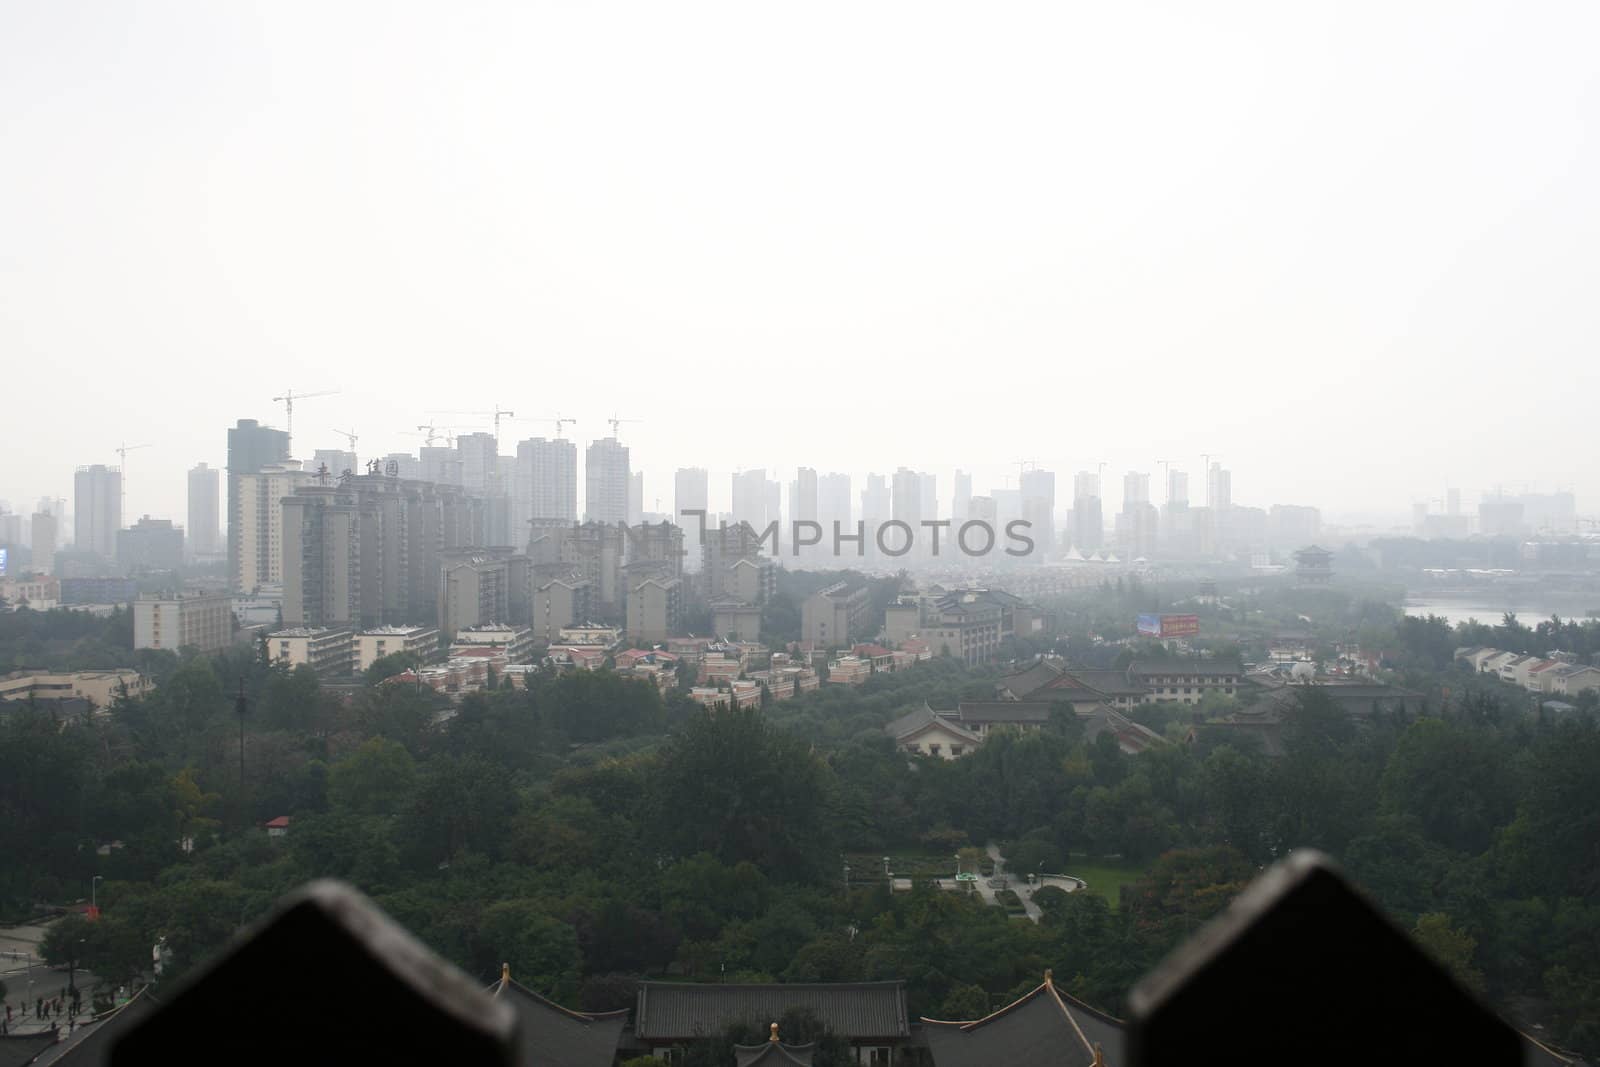 Skyline of Xian / Xi'an, China by koep